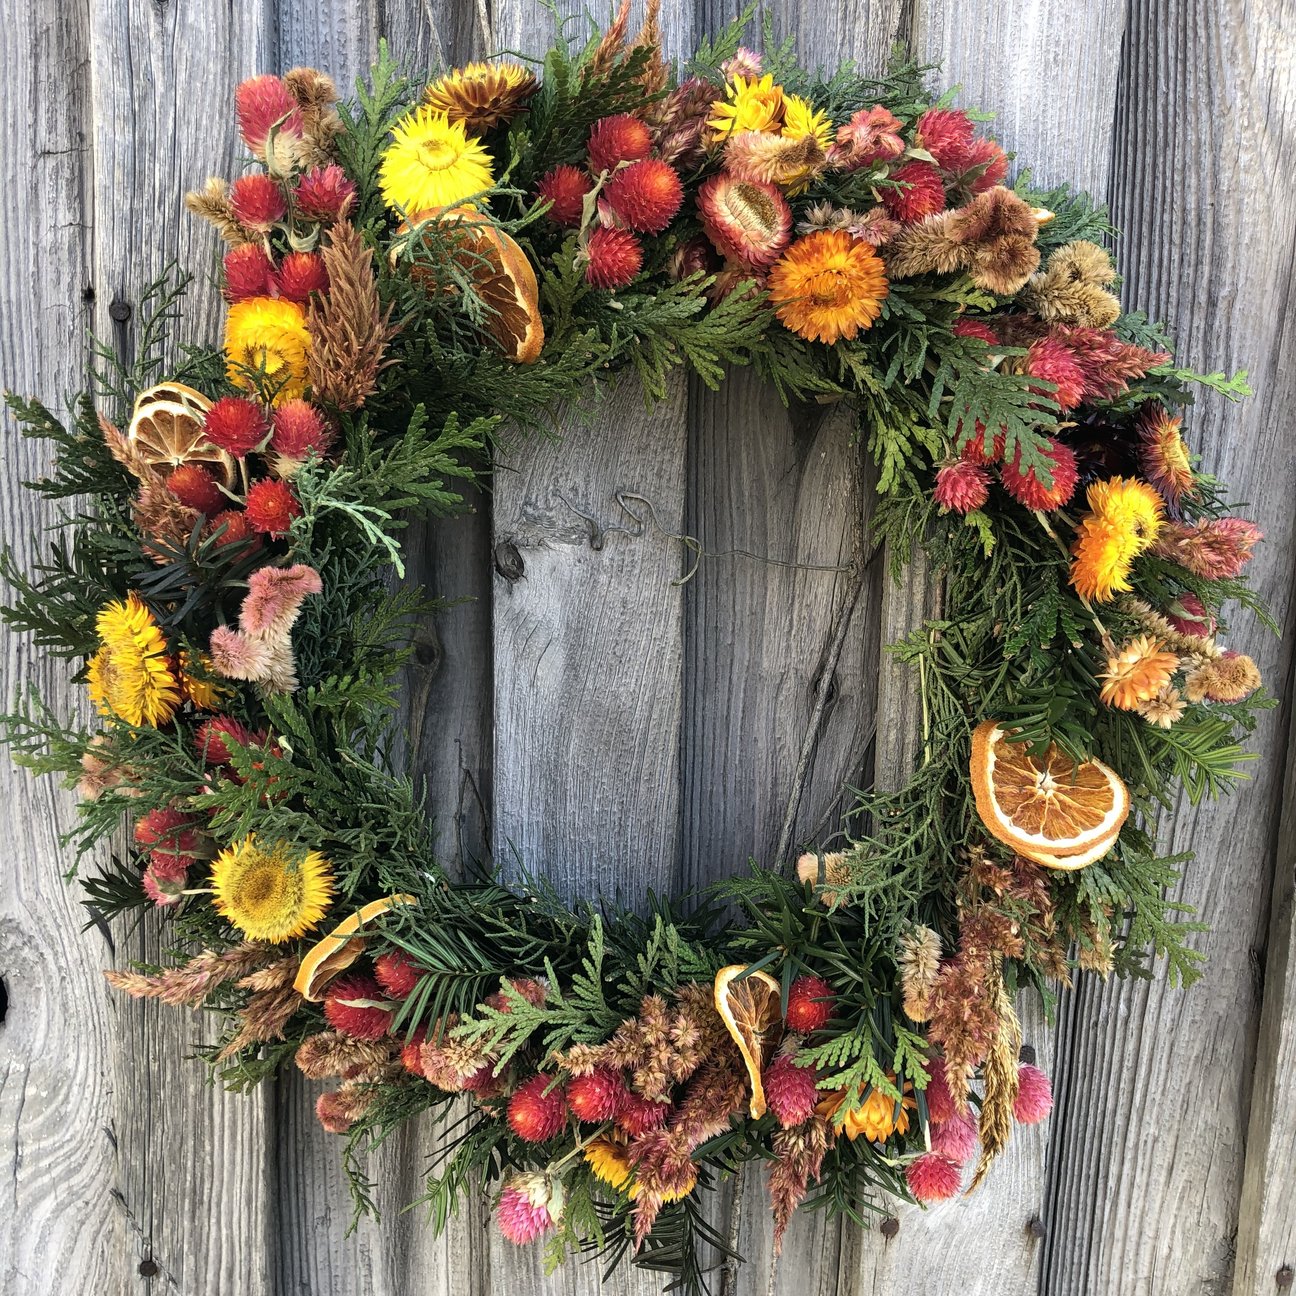 Dried Flower Wreath Workshop December 16, Afternoon